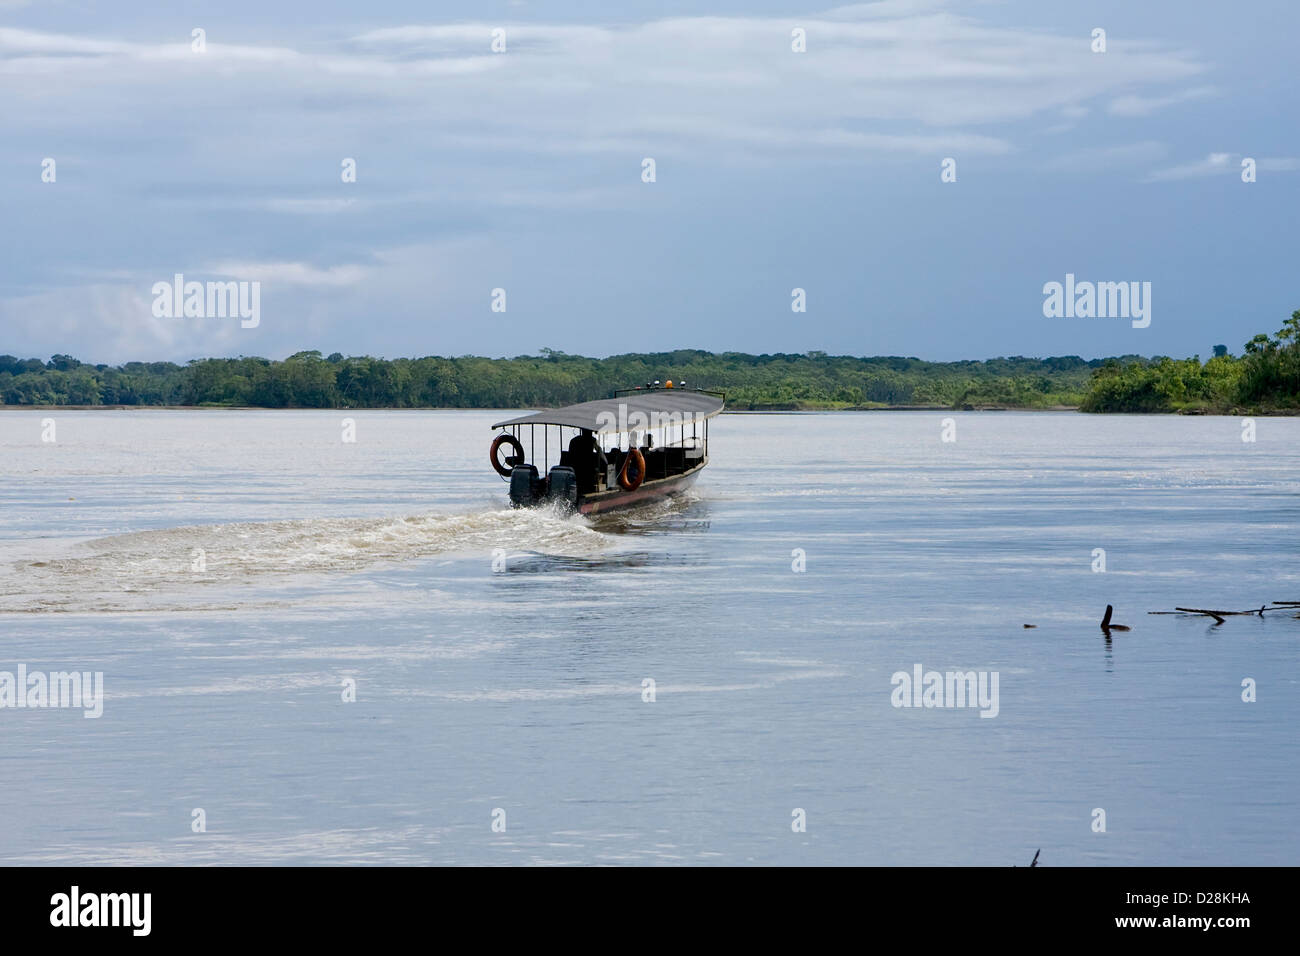 El paseo en bote por el Río Río Napo, Amazonía ecuatoriana Foto de stock